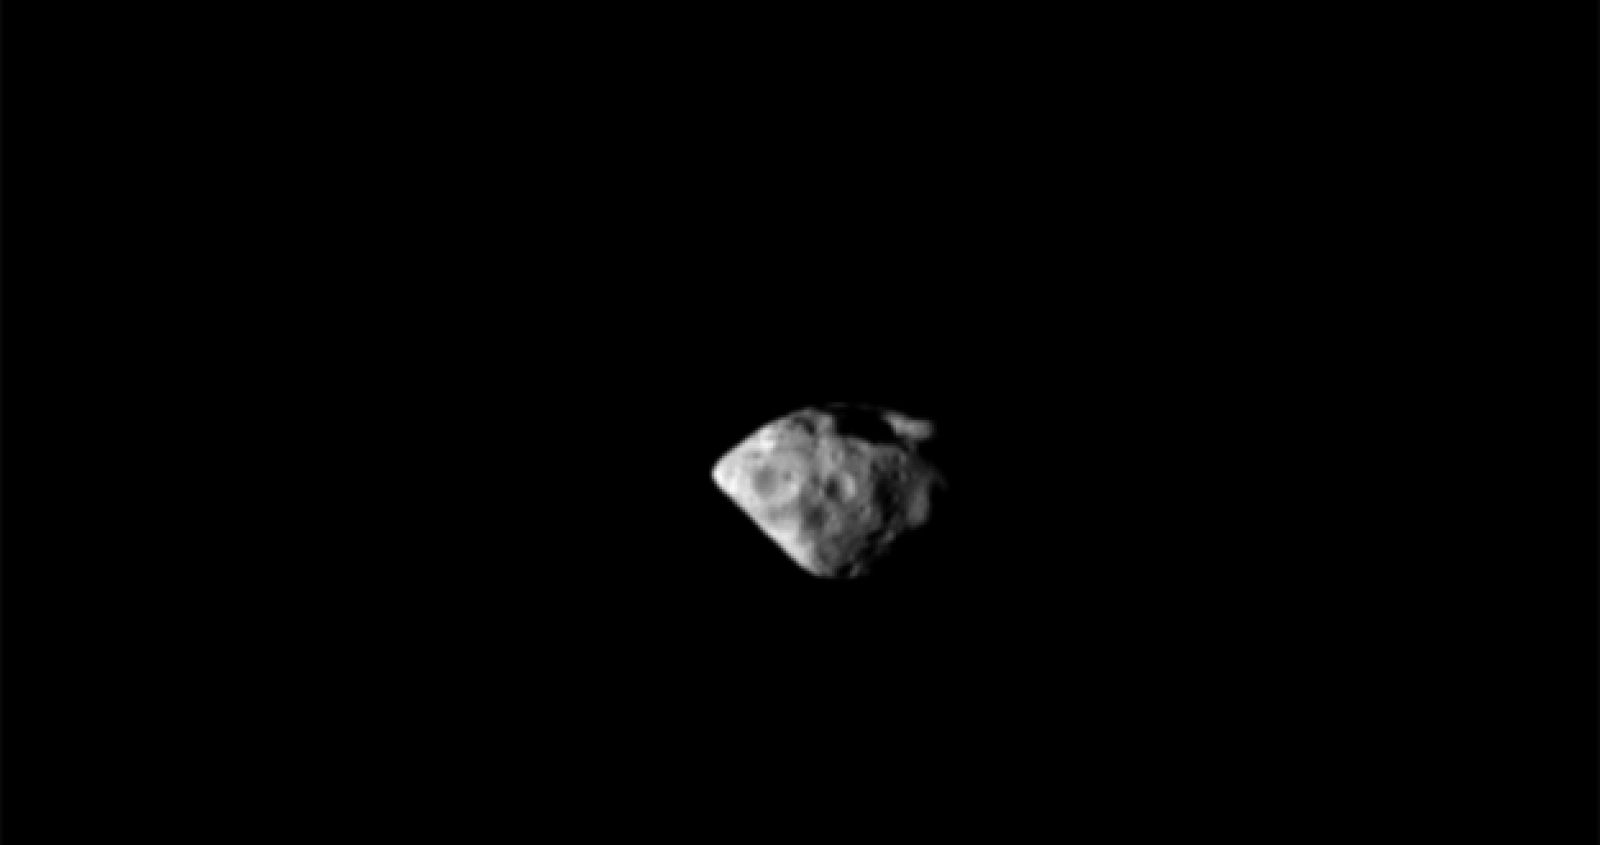 El asteroide Steins, una roca gigantesca con forma de diamante.